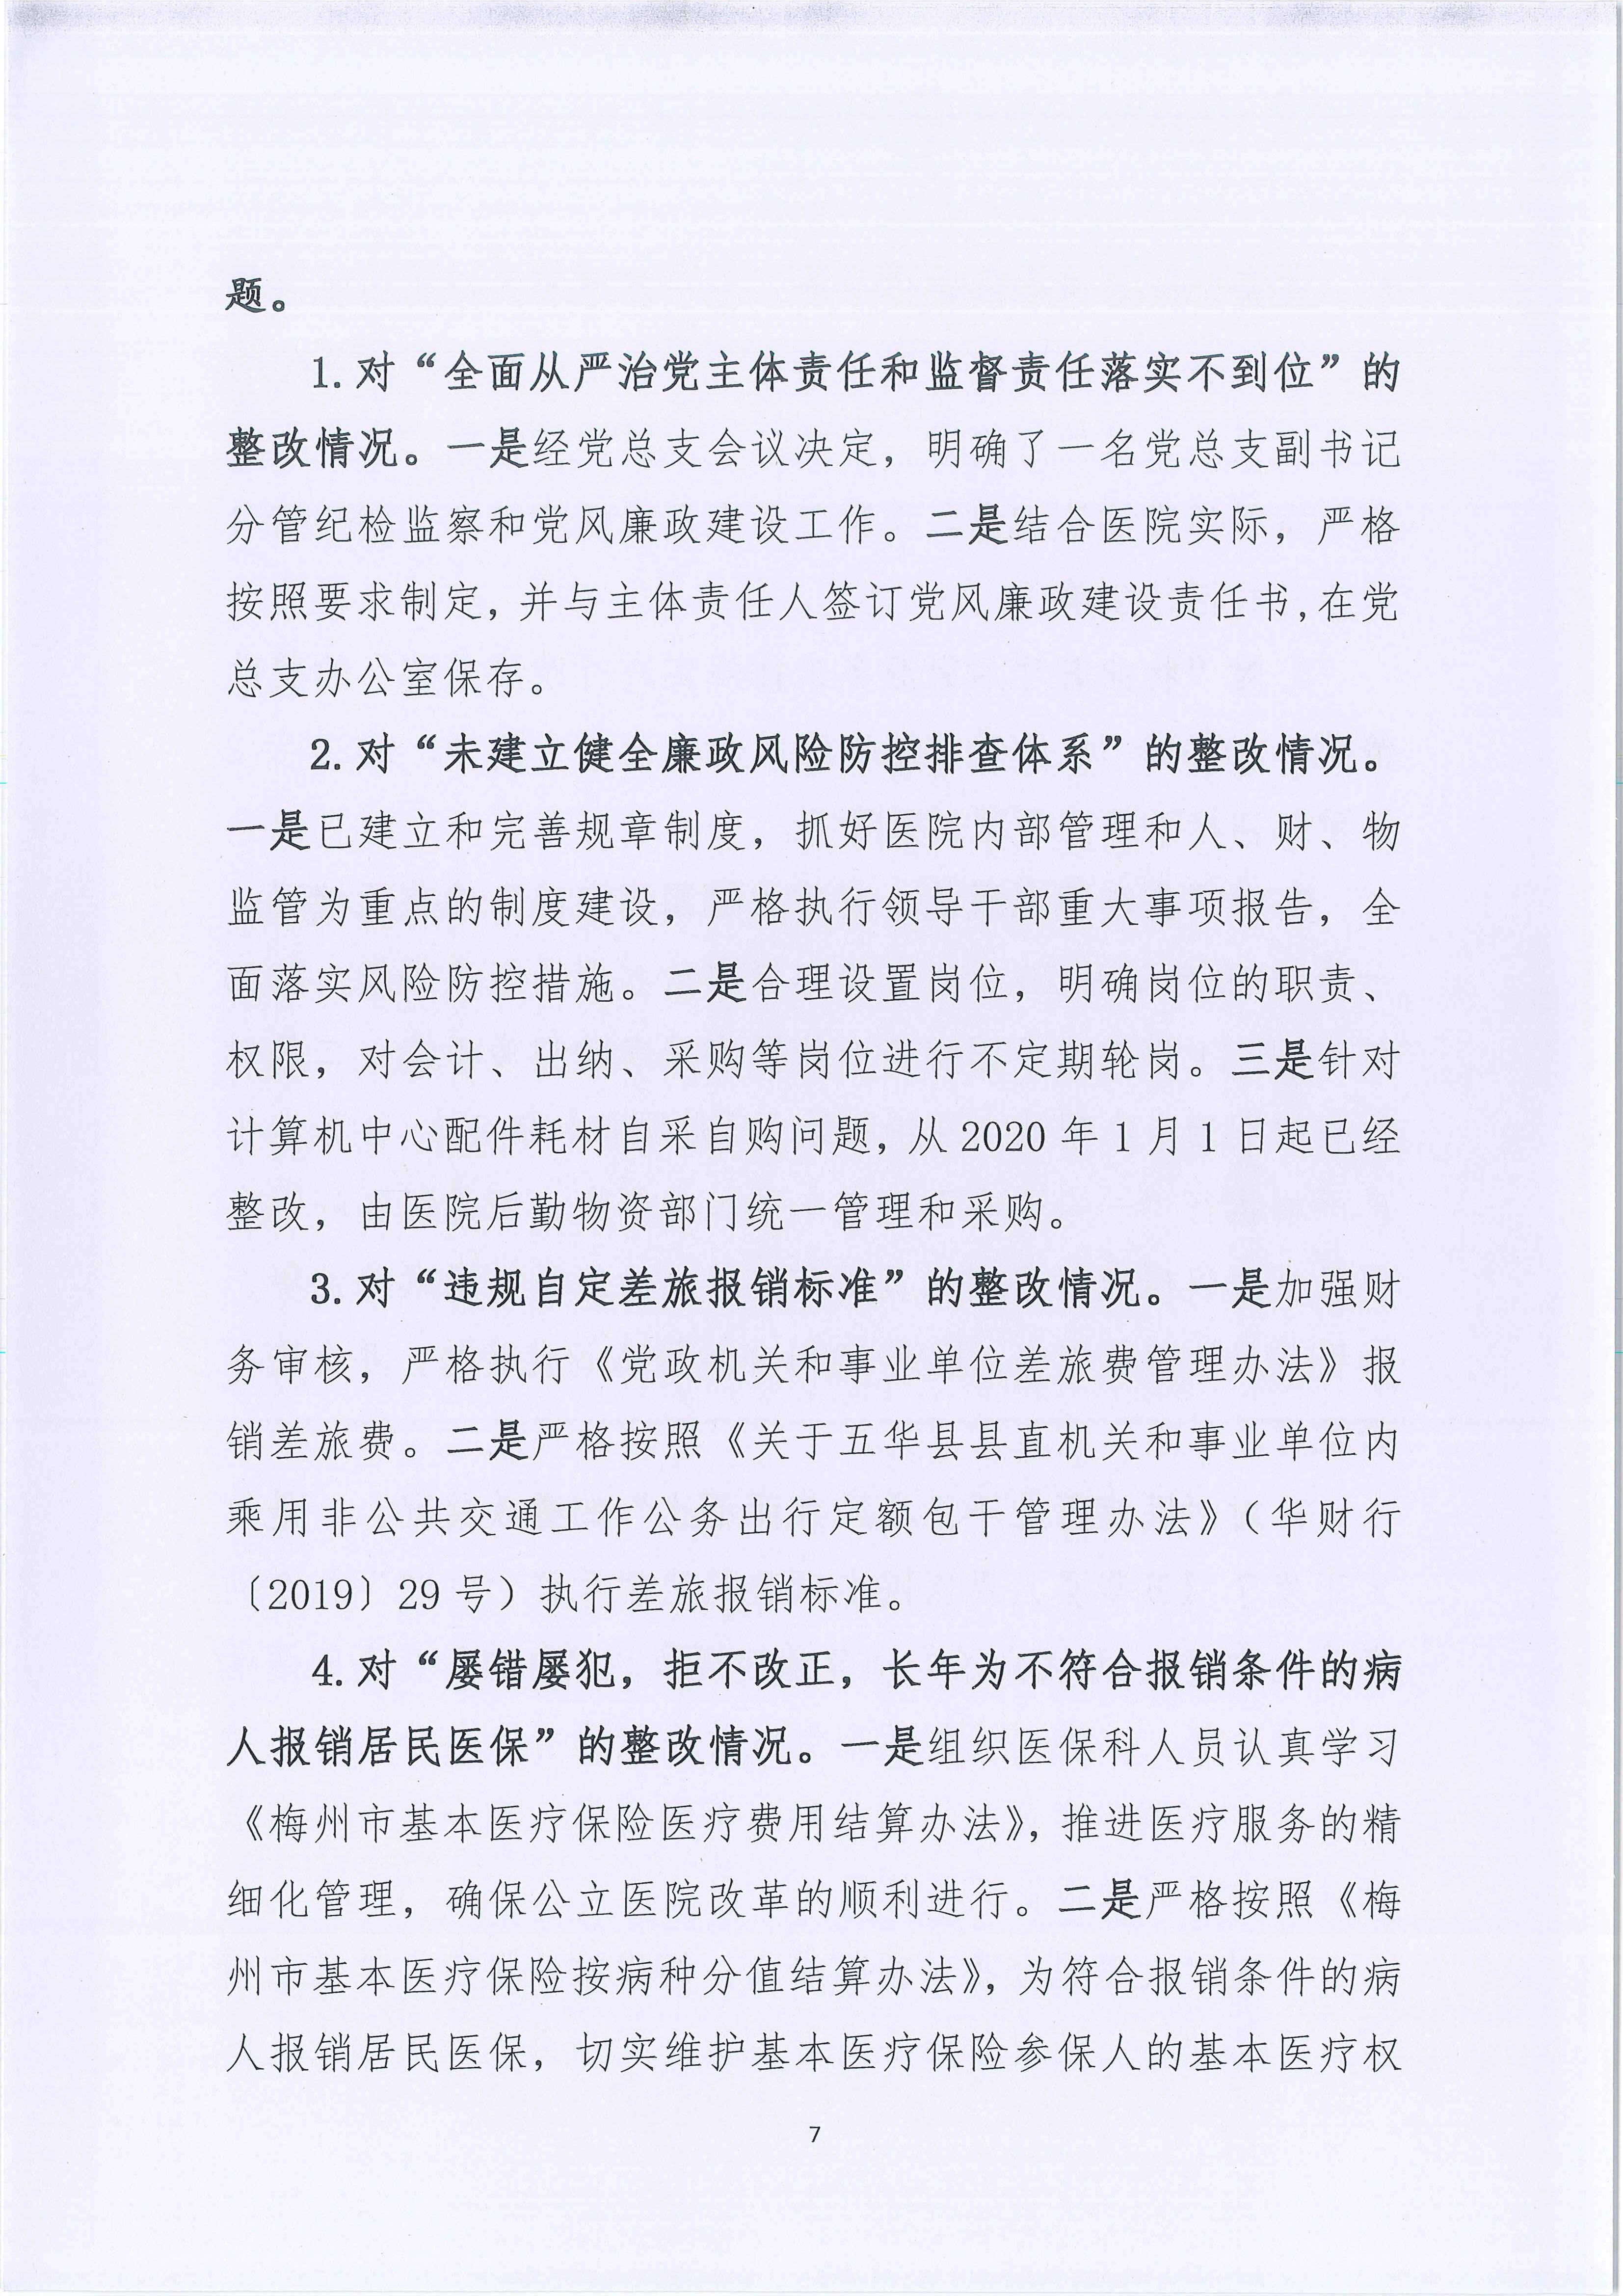 五华县人民医院关于巡察整改进展情况的通报_7